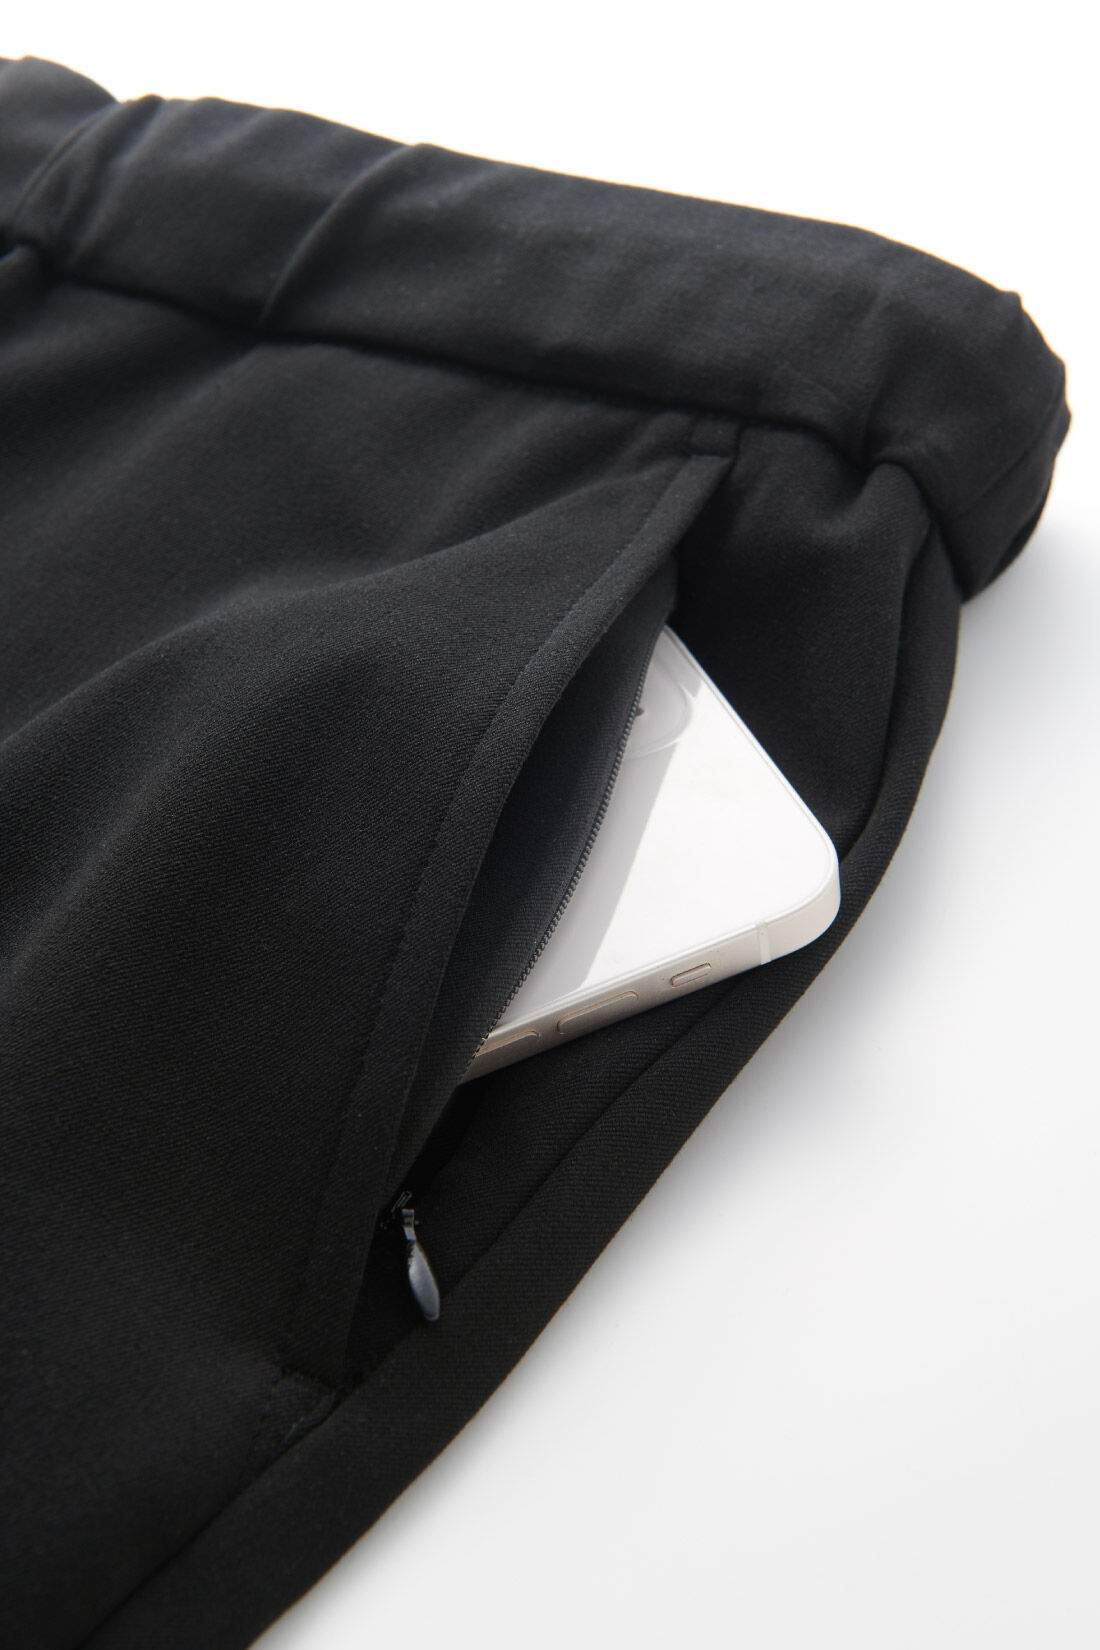 IEDIT|IEDIT[イディット]　いつまでもキレイな黒が続く 純黒プルオンスマートテーパードメンズパンツ〈ブラック〉|フロントサイドの左側ポケットには、スマホを入れるのにぴったりなファスナー仕様の隠しポケット付き。